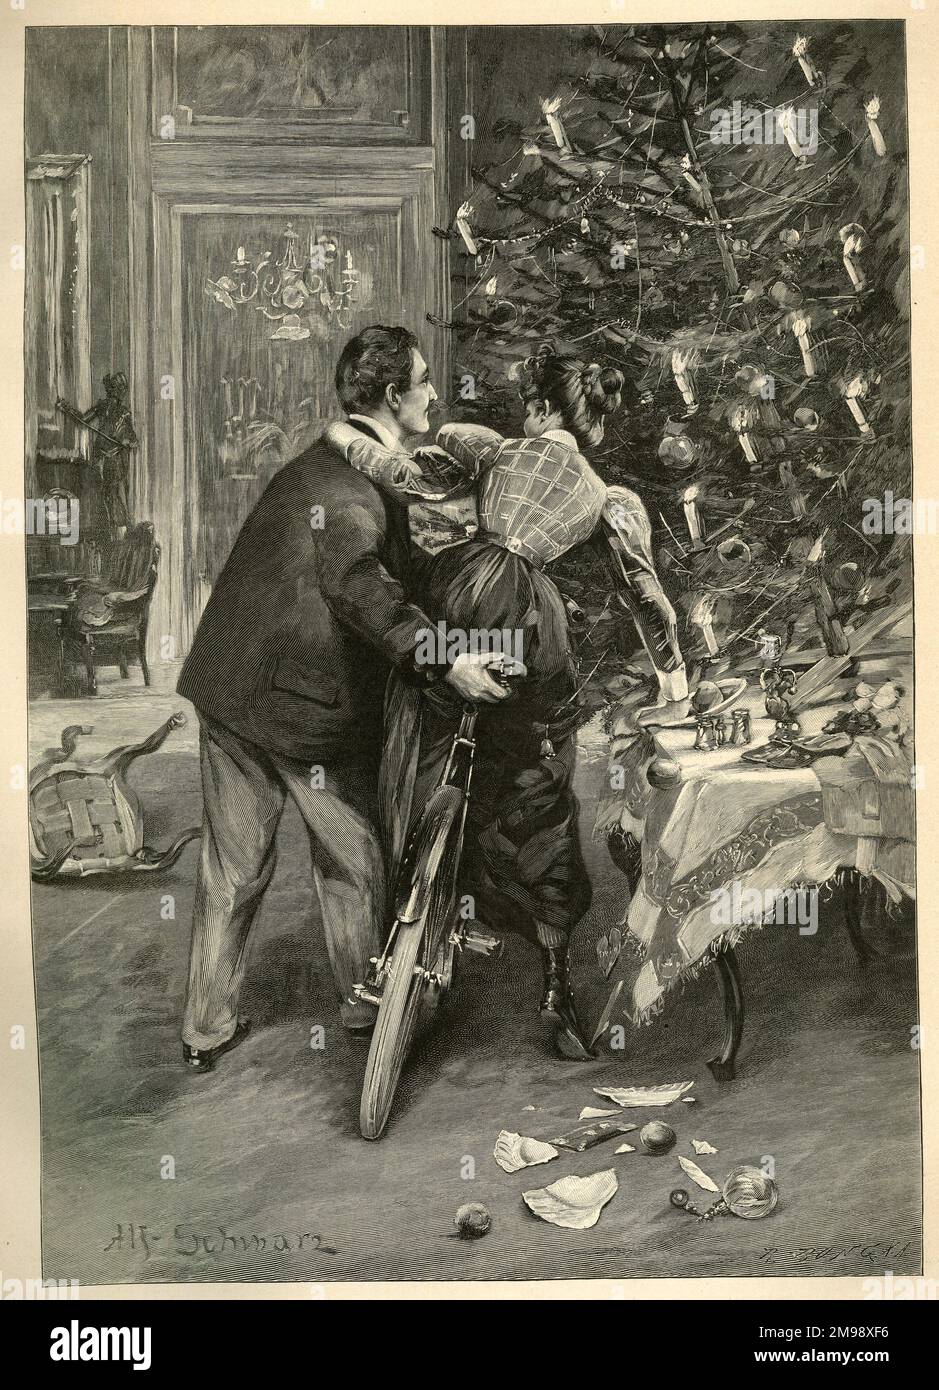 Un moment critique par Alfred Schwarz - une femme conduit son vélo (sans doute un cadeau de Noël) dans une table, cassant un peu de vaisselle. Banque D'Images